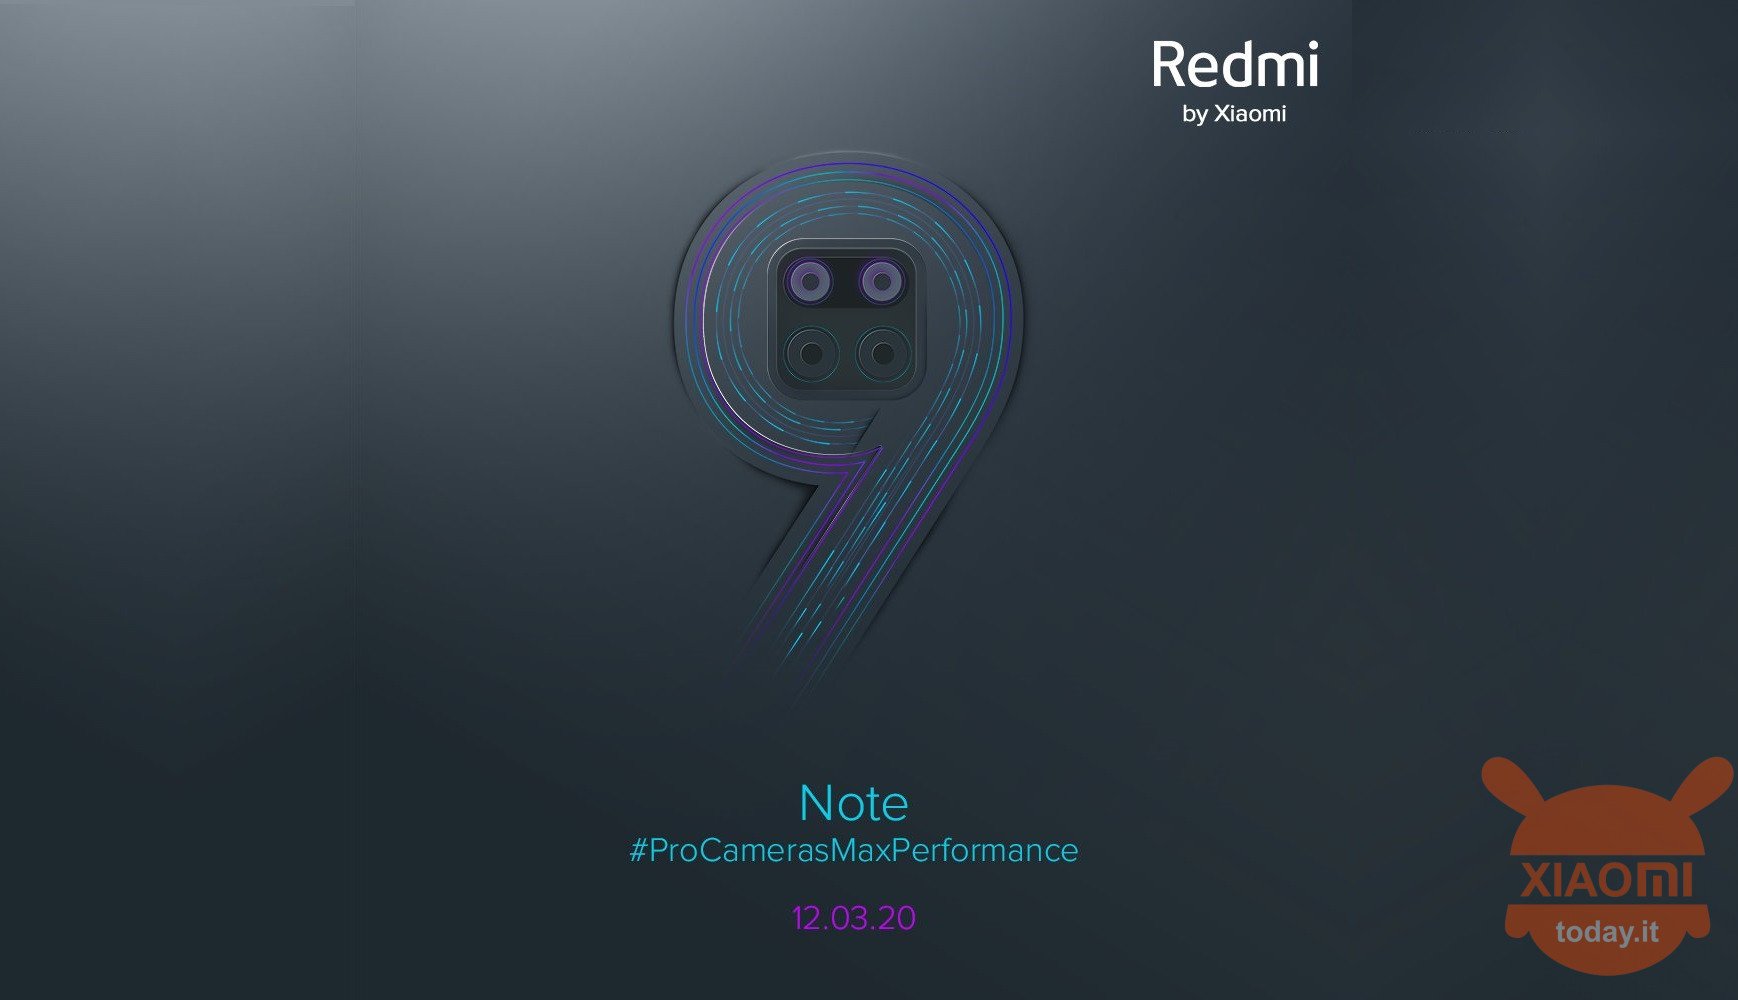 Will Redmi Note 9 Pro Max take the place of Xiaomi Mi Max 4?